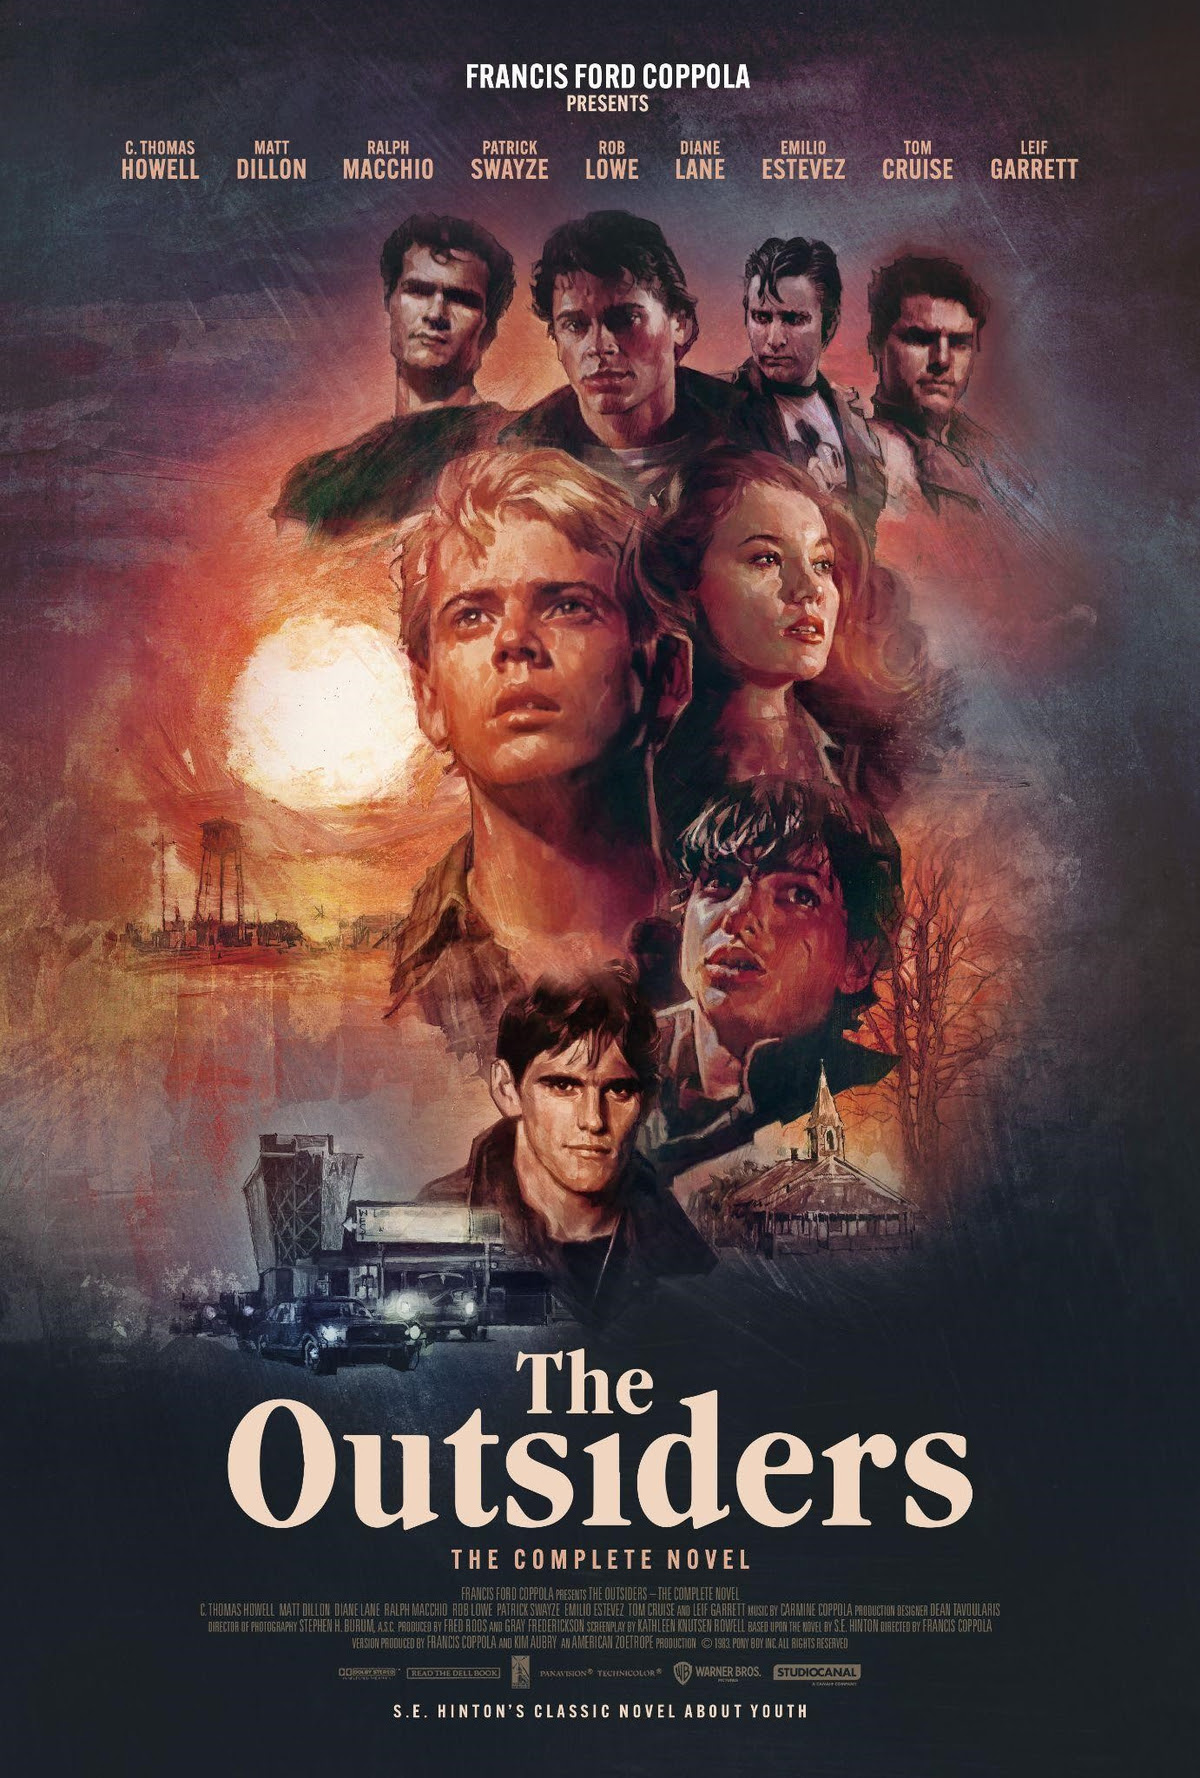 Cover zur Blu ray The Outsiders mit den Köopfen der Schauspieler Patrick Swayze, Matt Dillon, Ralph Macchio, Tom Cruise